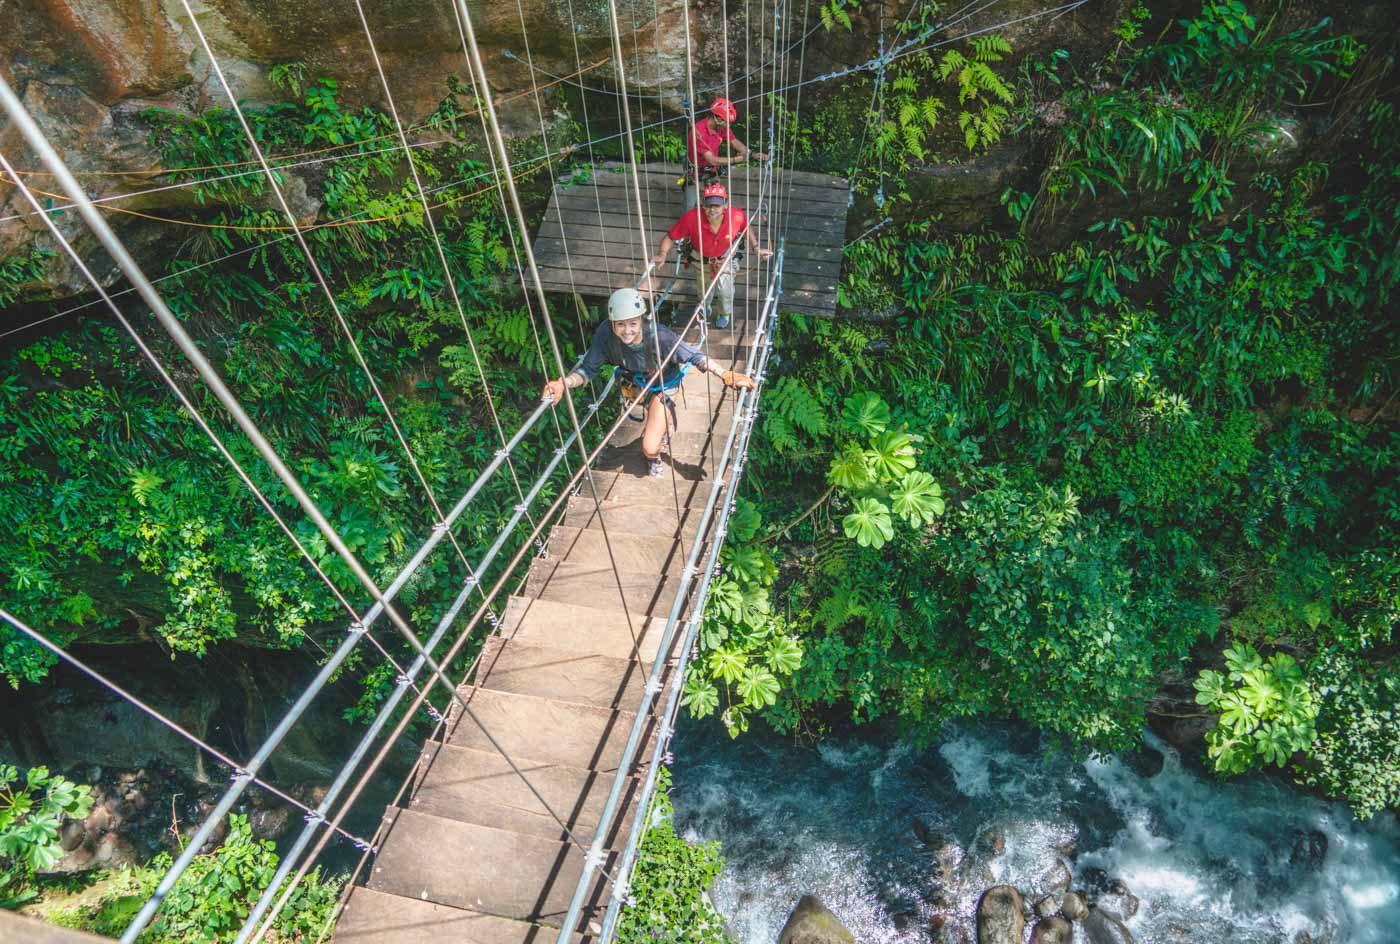 Top 8 Adventure Activities in Costa Rica